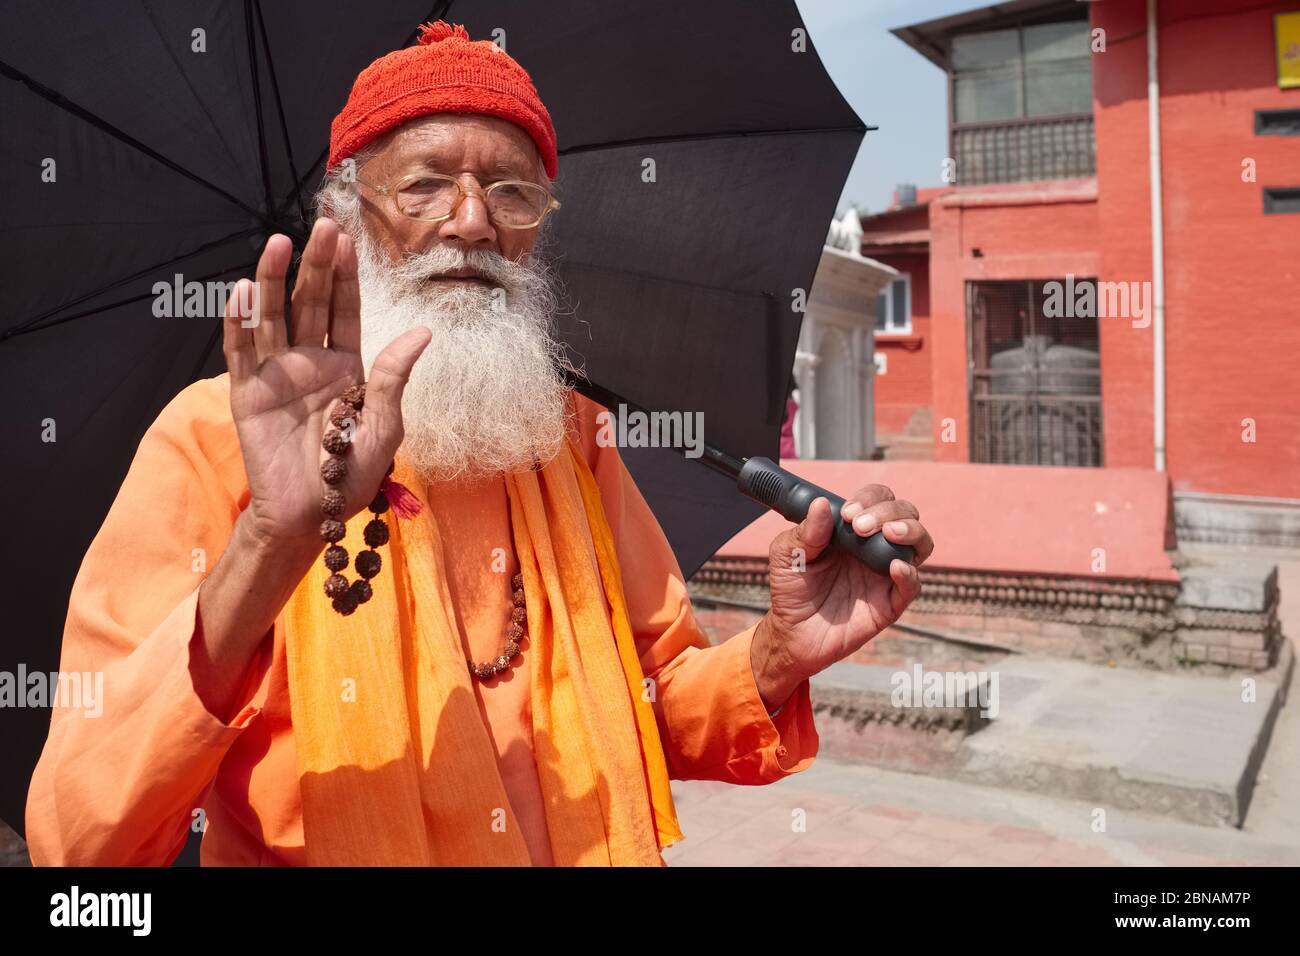 Ein Sadhu (Hindu-Heiliger), mit Schirm, der sich vor der Sonne schützt und Rudraksha-Perlen in der Hand, begrüßt den Fotografen Kathmandu Nepal Stockfoto